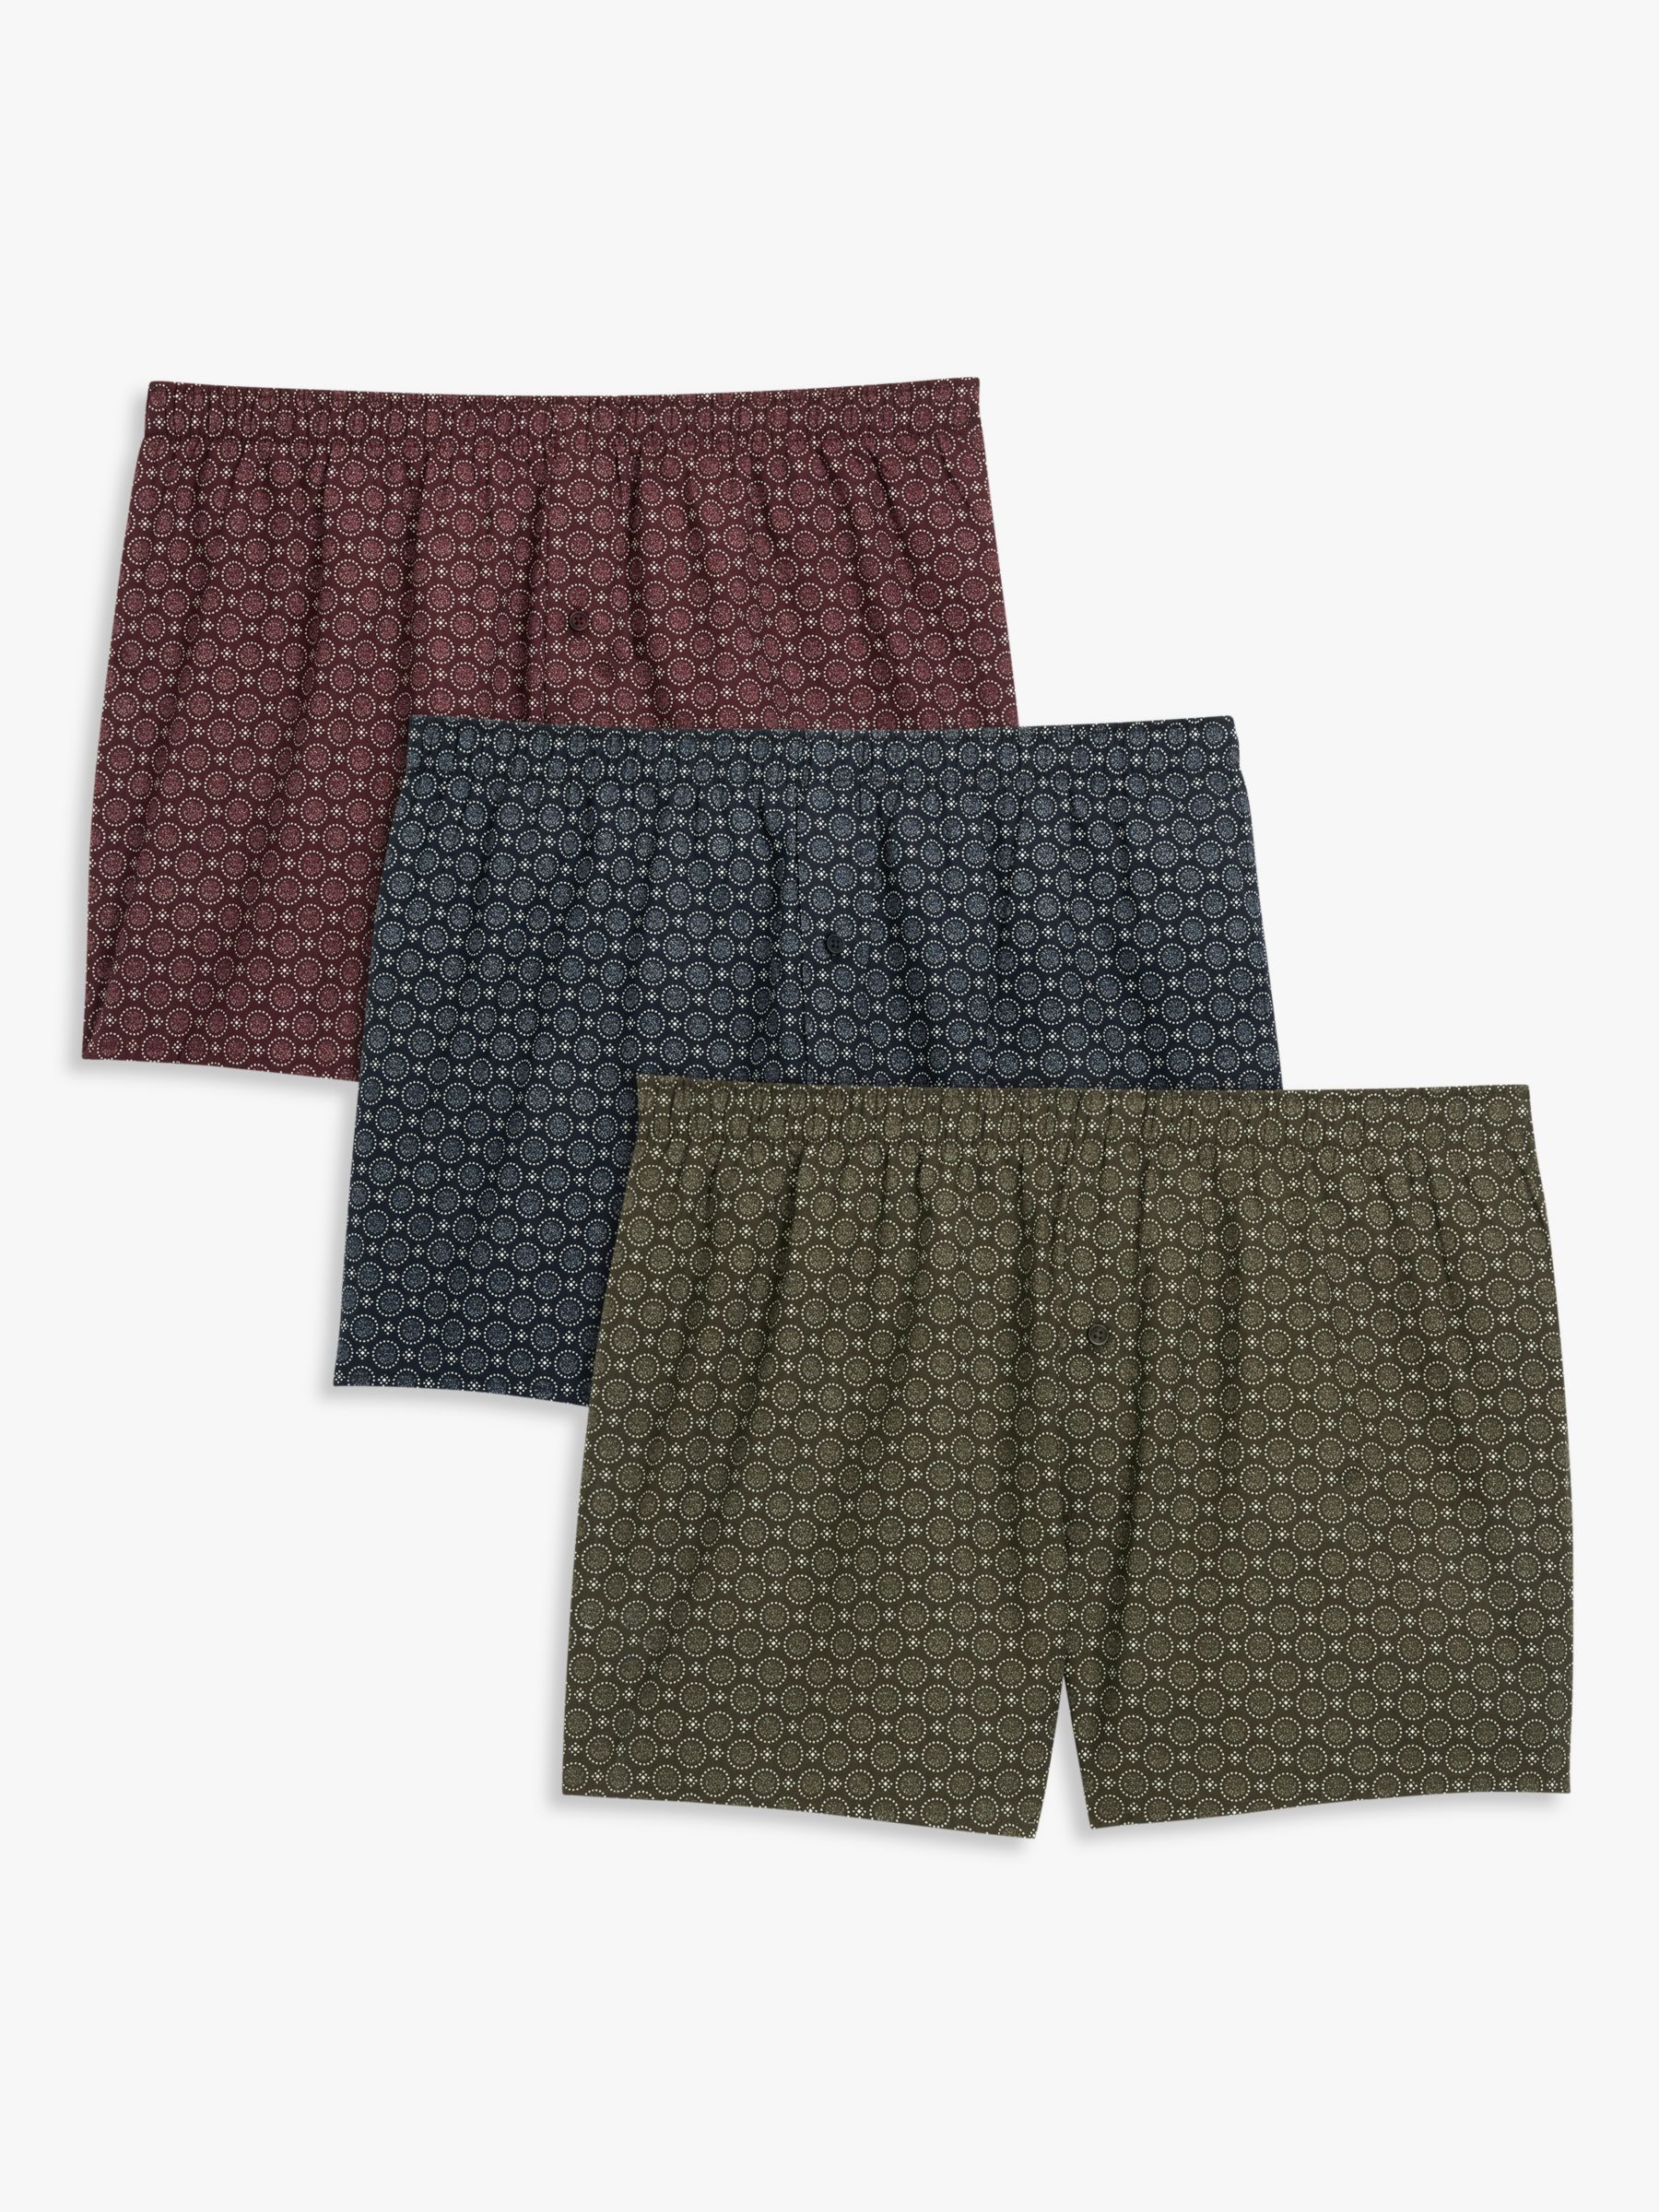 H&M Men's Boxer Shorts Multipack Bundle Underwear Cotton